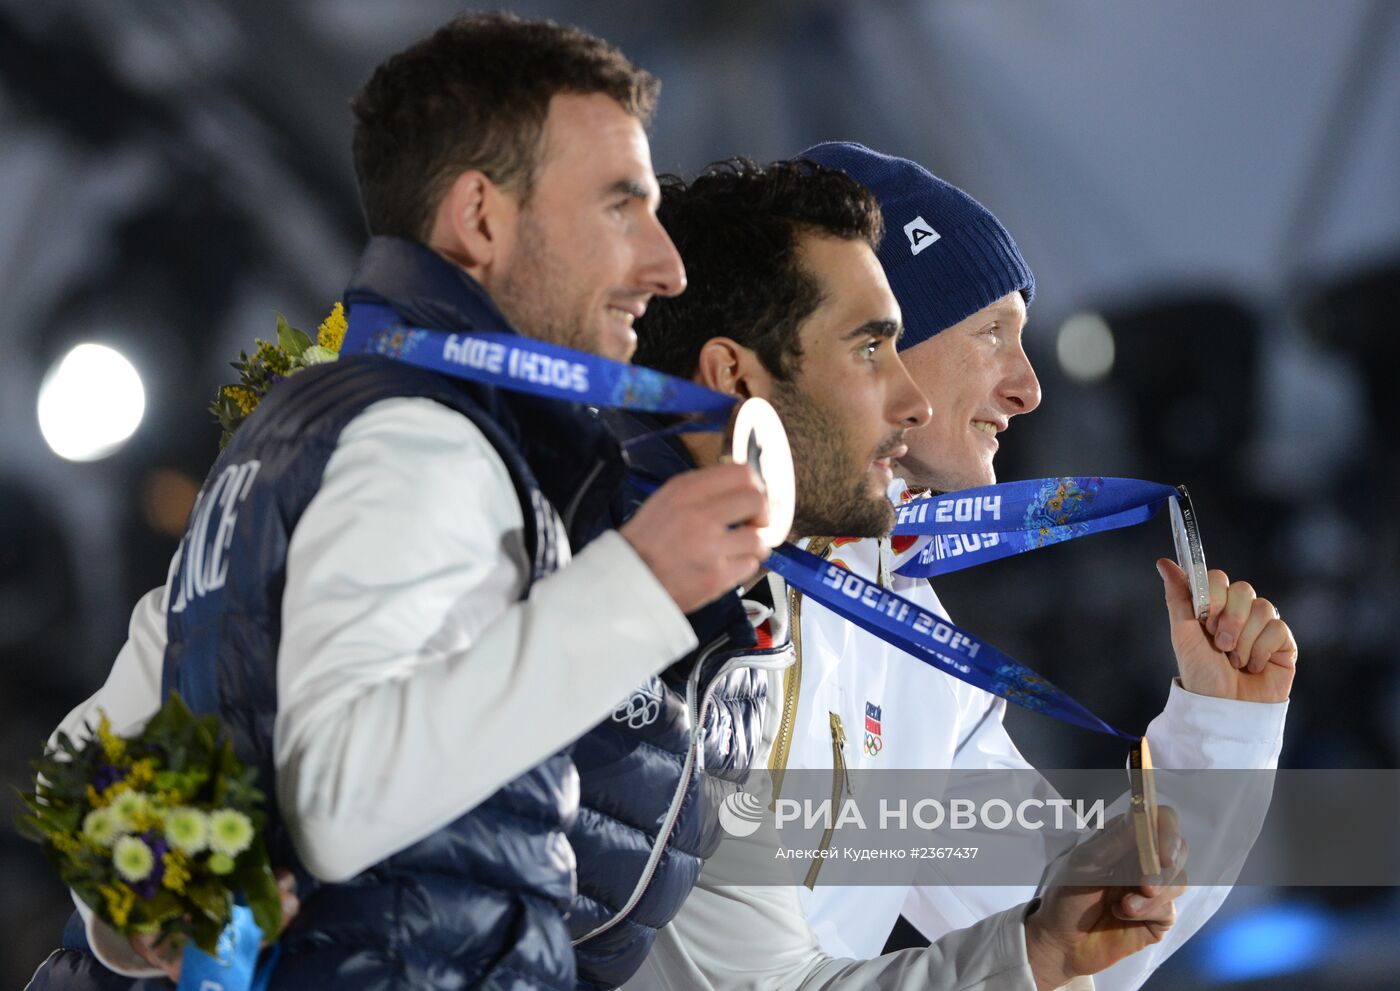 Олимпиада 2014. Церемония награждения. Четвертый день